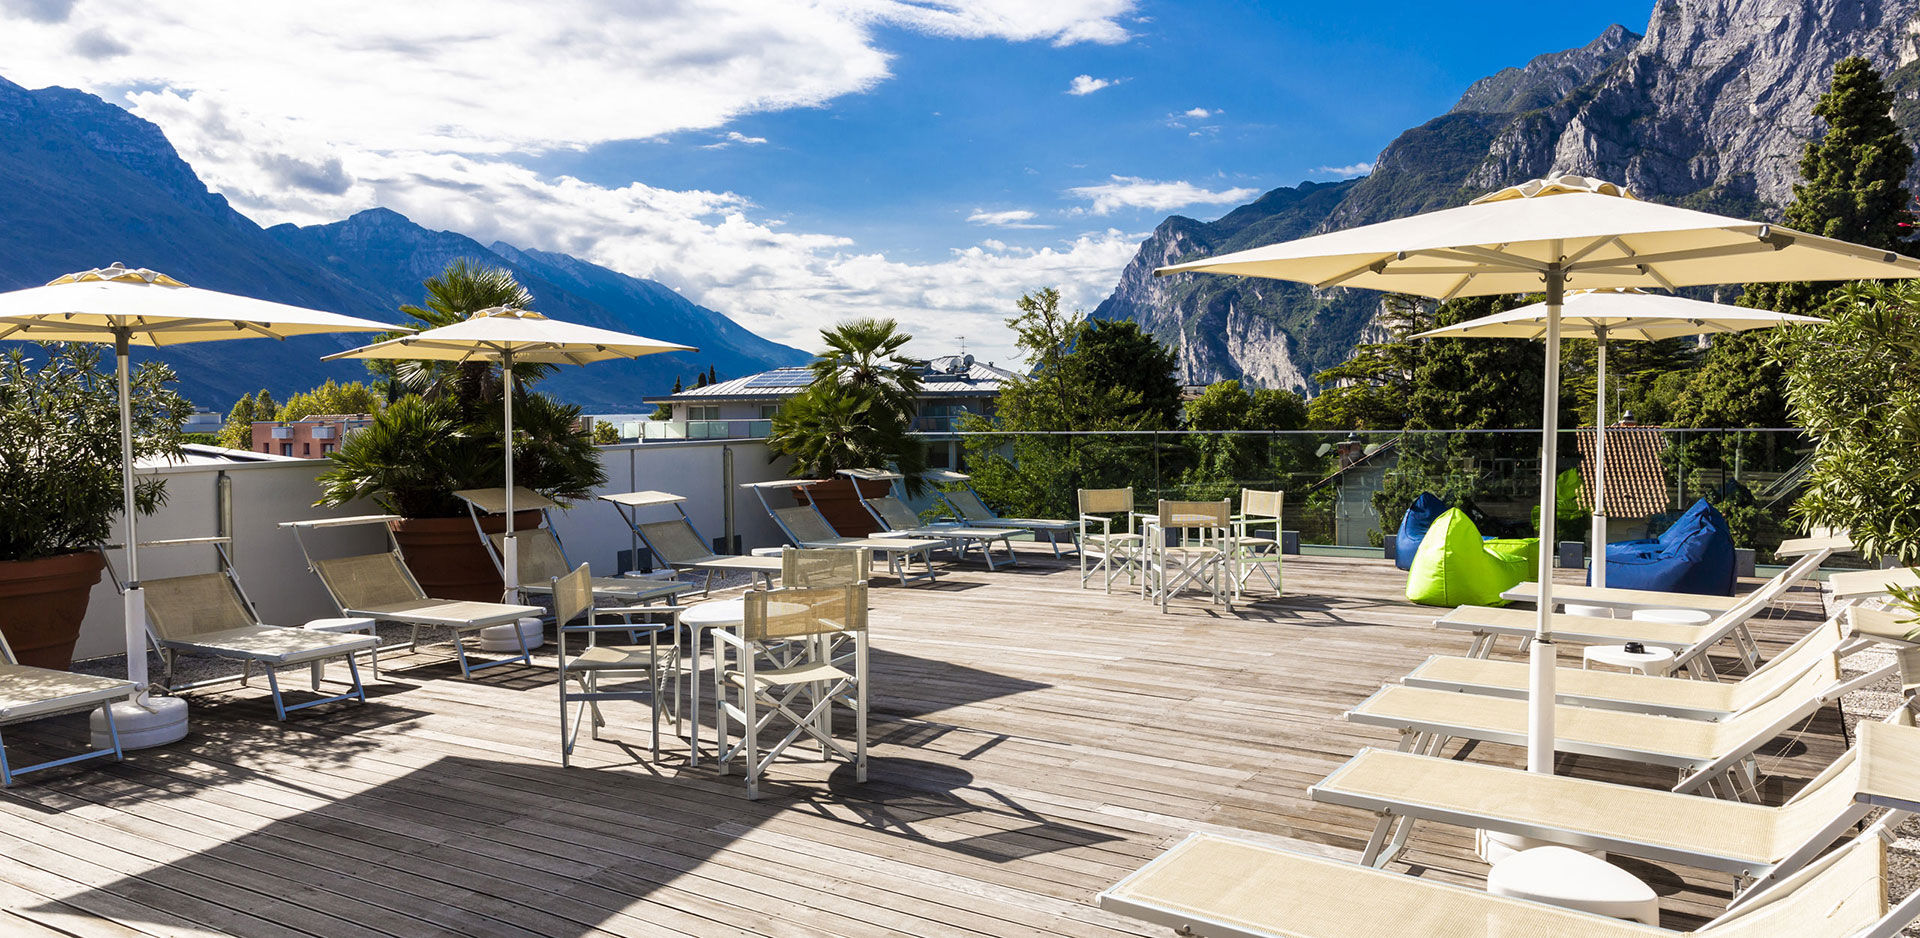 Apartments Garda Lake - Riva del Garda - Garda Trentino